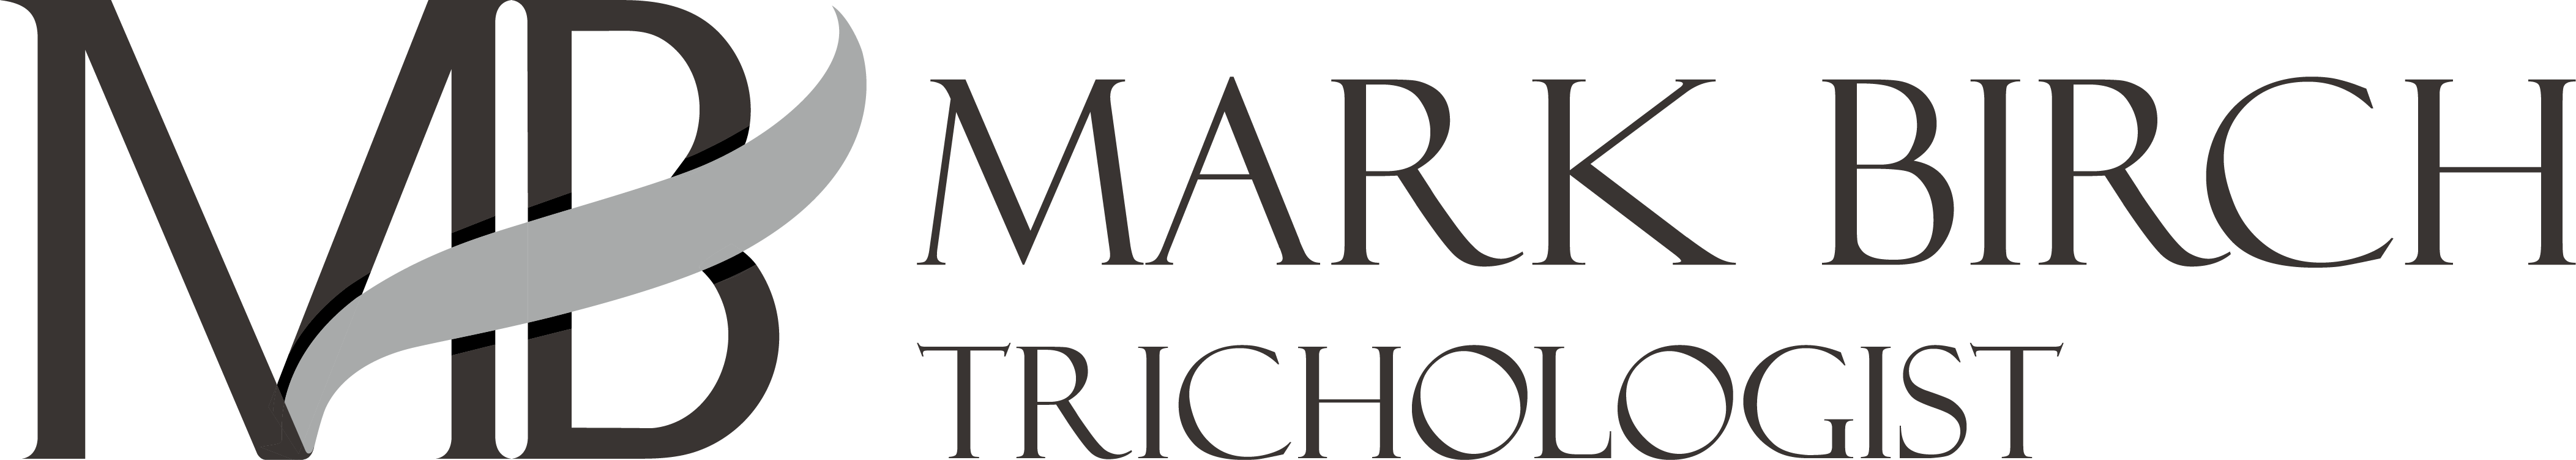 Mark Birch Trichologist